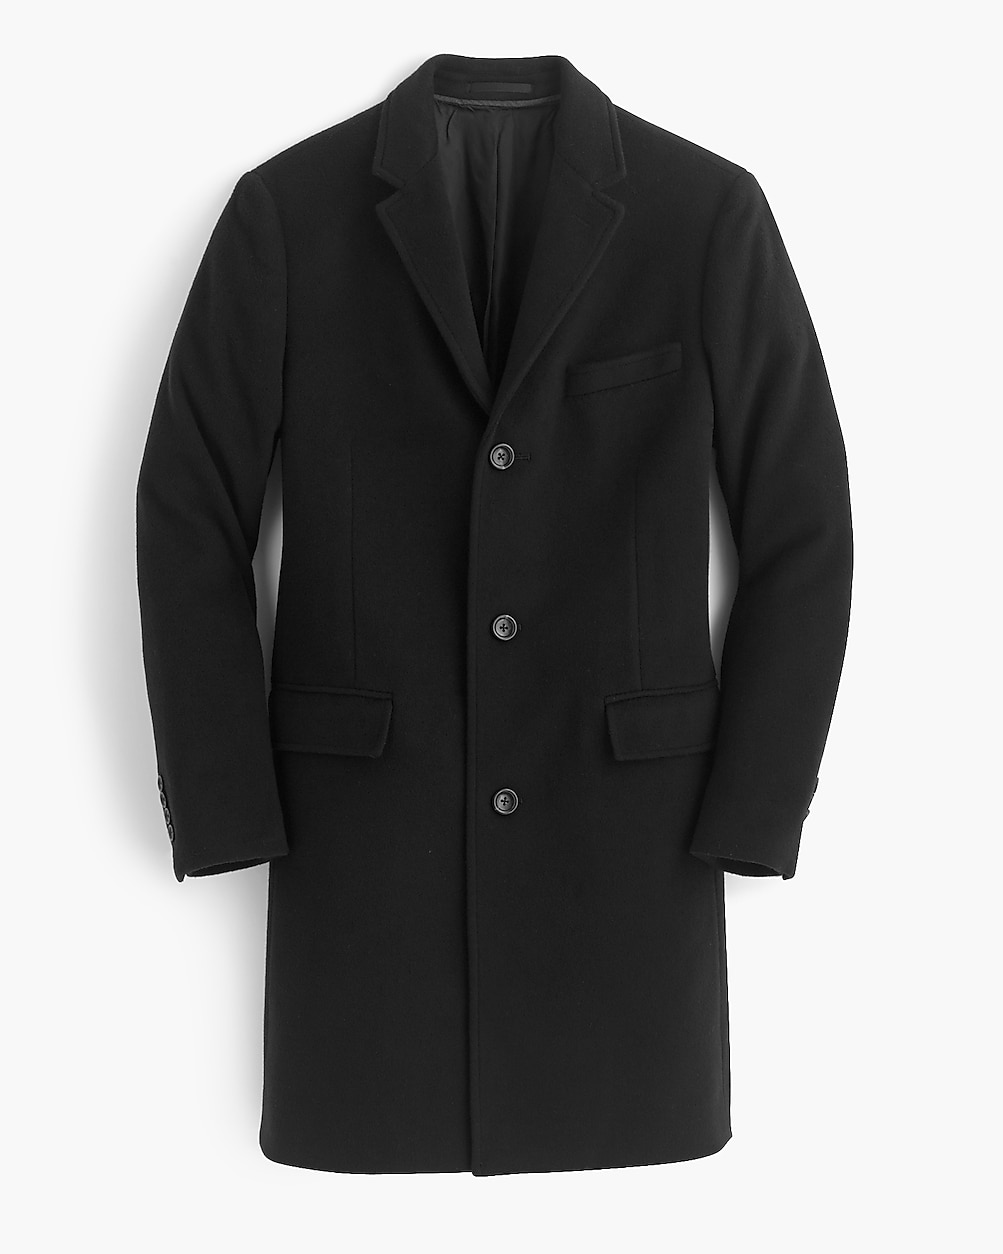 Ludlow Topcoat In Italian Wool-cashmere For Men - J.Crew